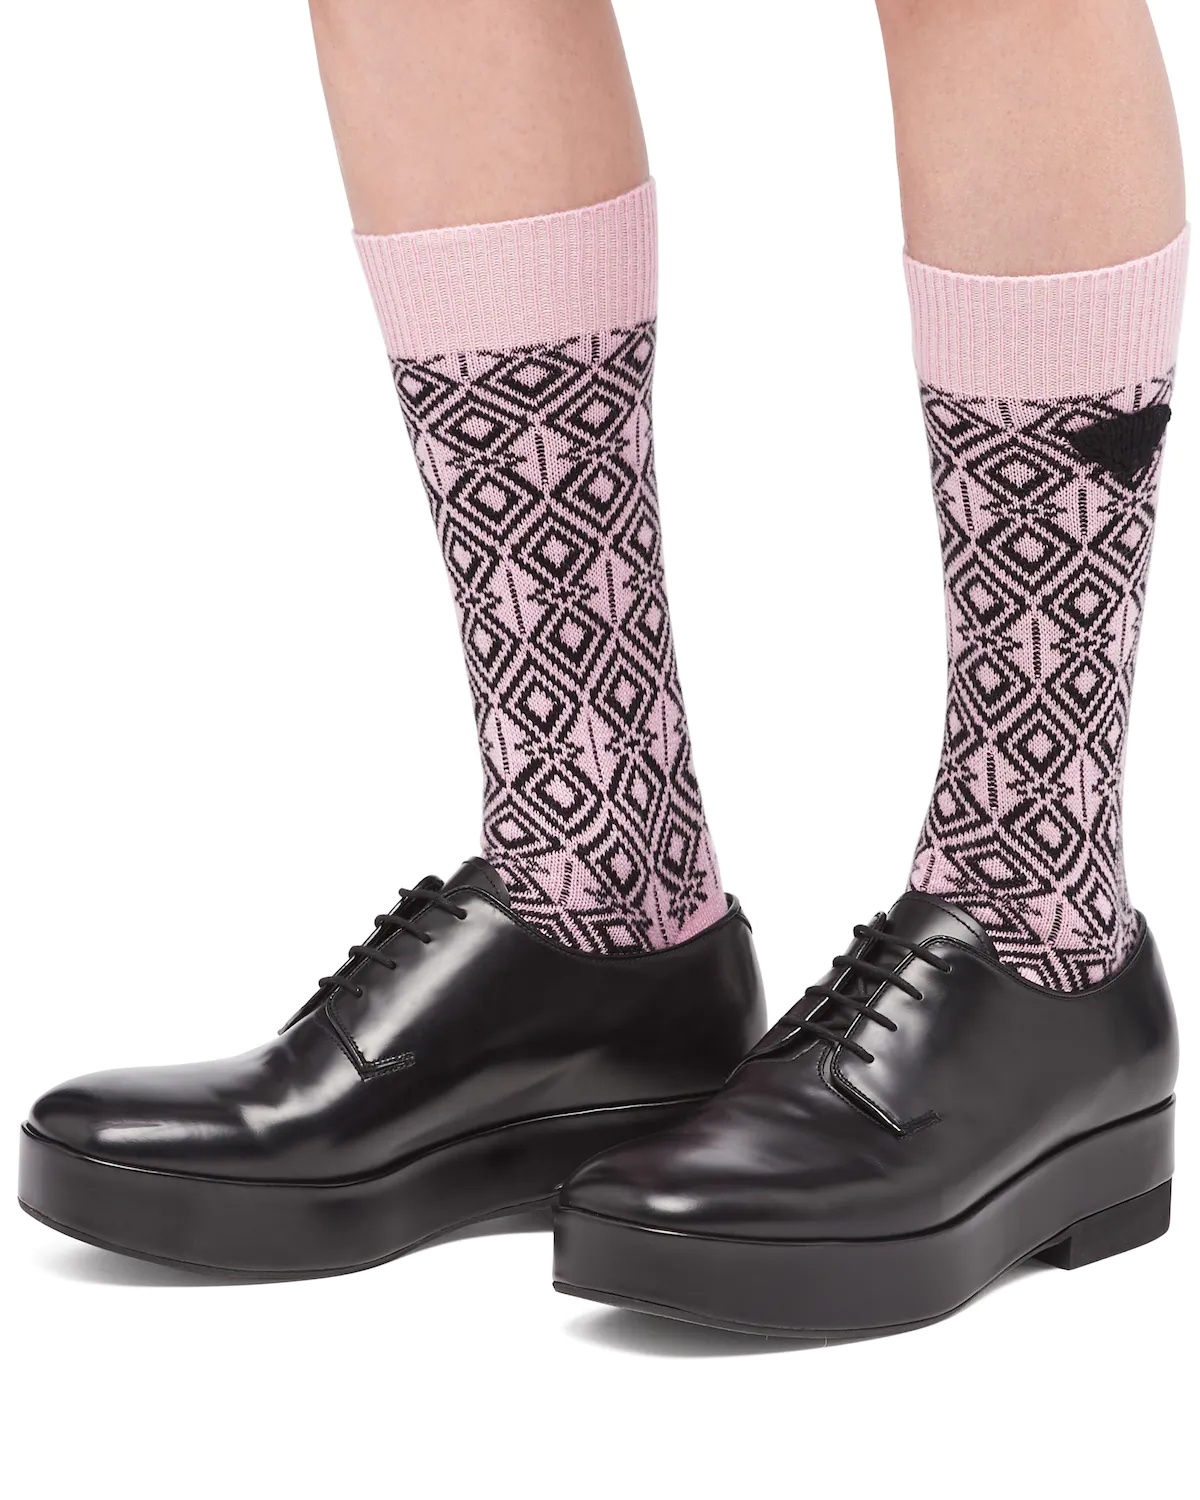 Cashmere ankle socks - 2